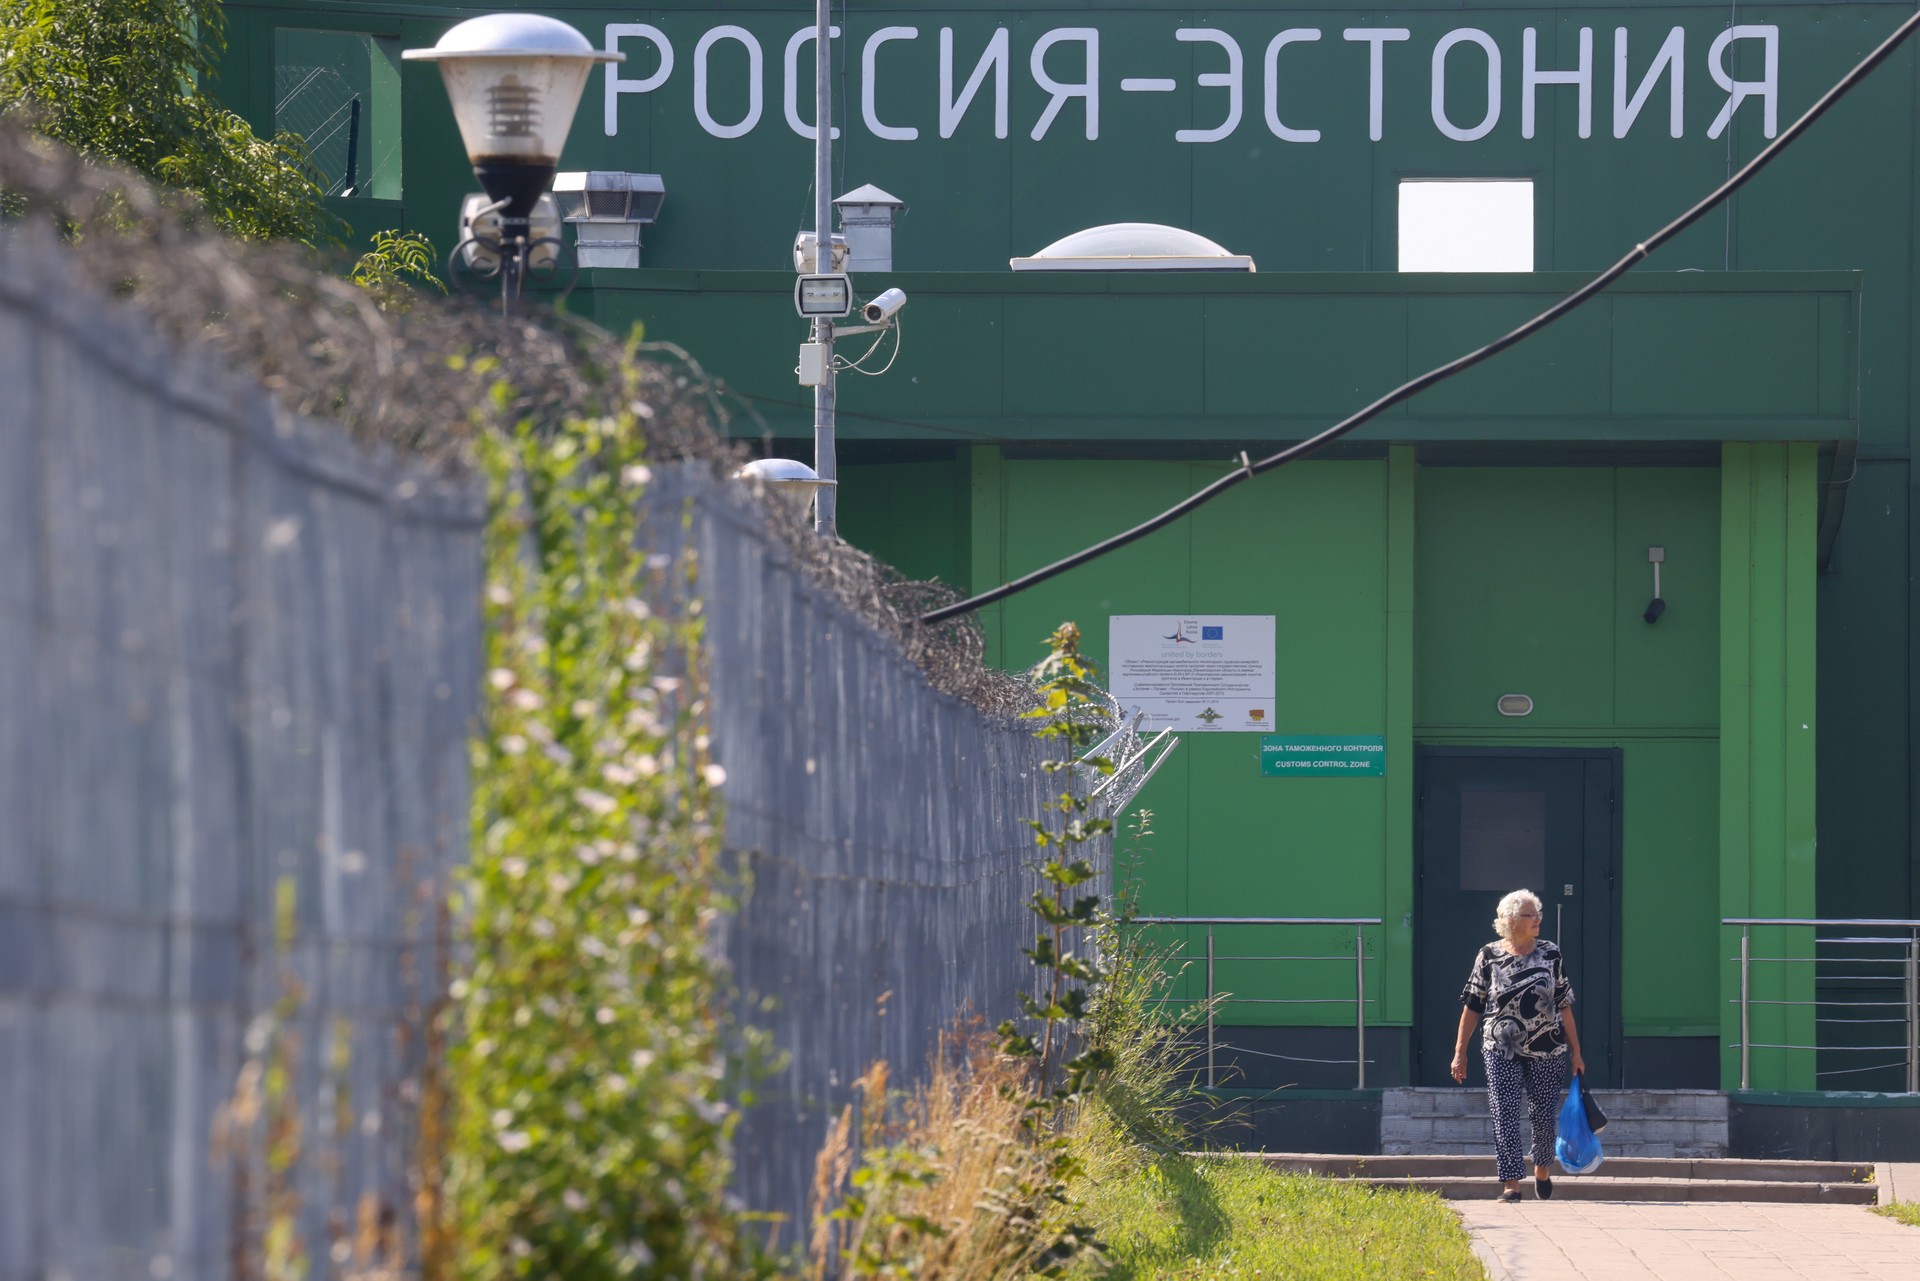 ERR: 88 человек отказались от гражданства Эстонии, из которых 24 человека уехали в Россию